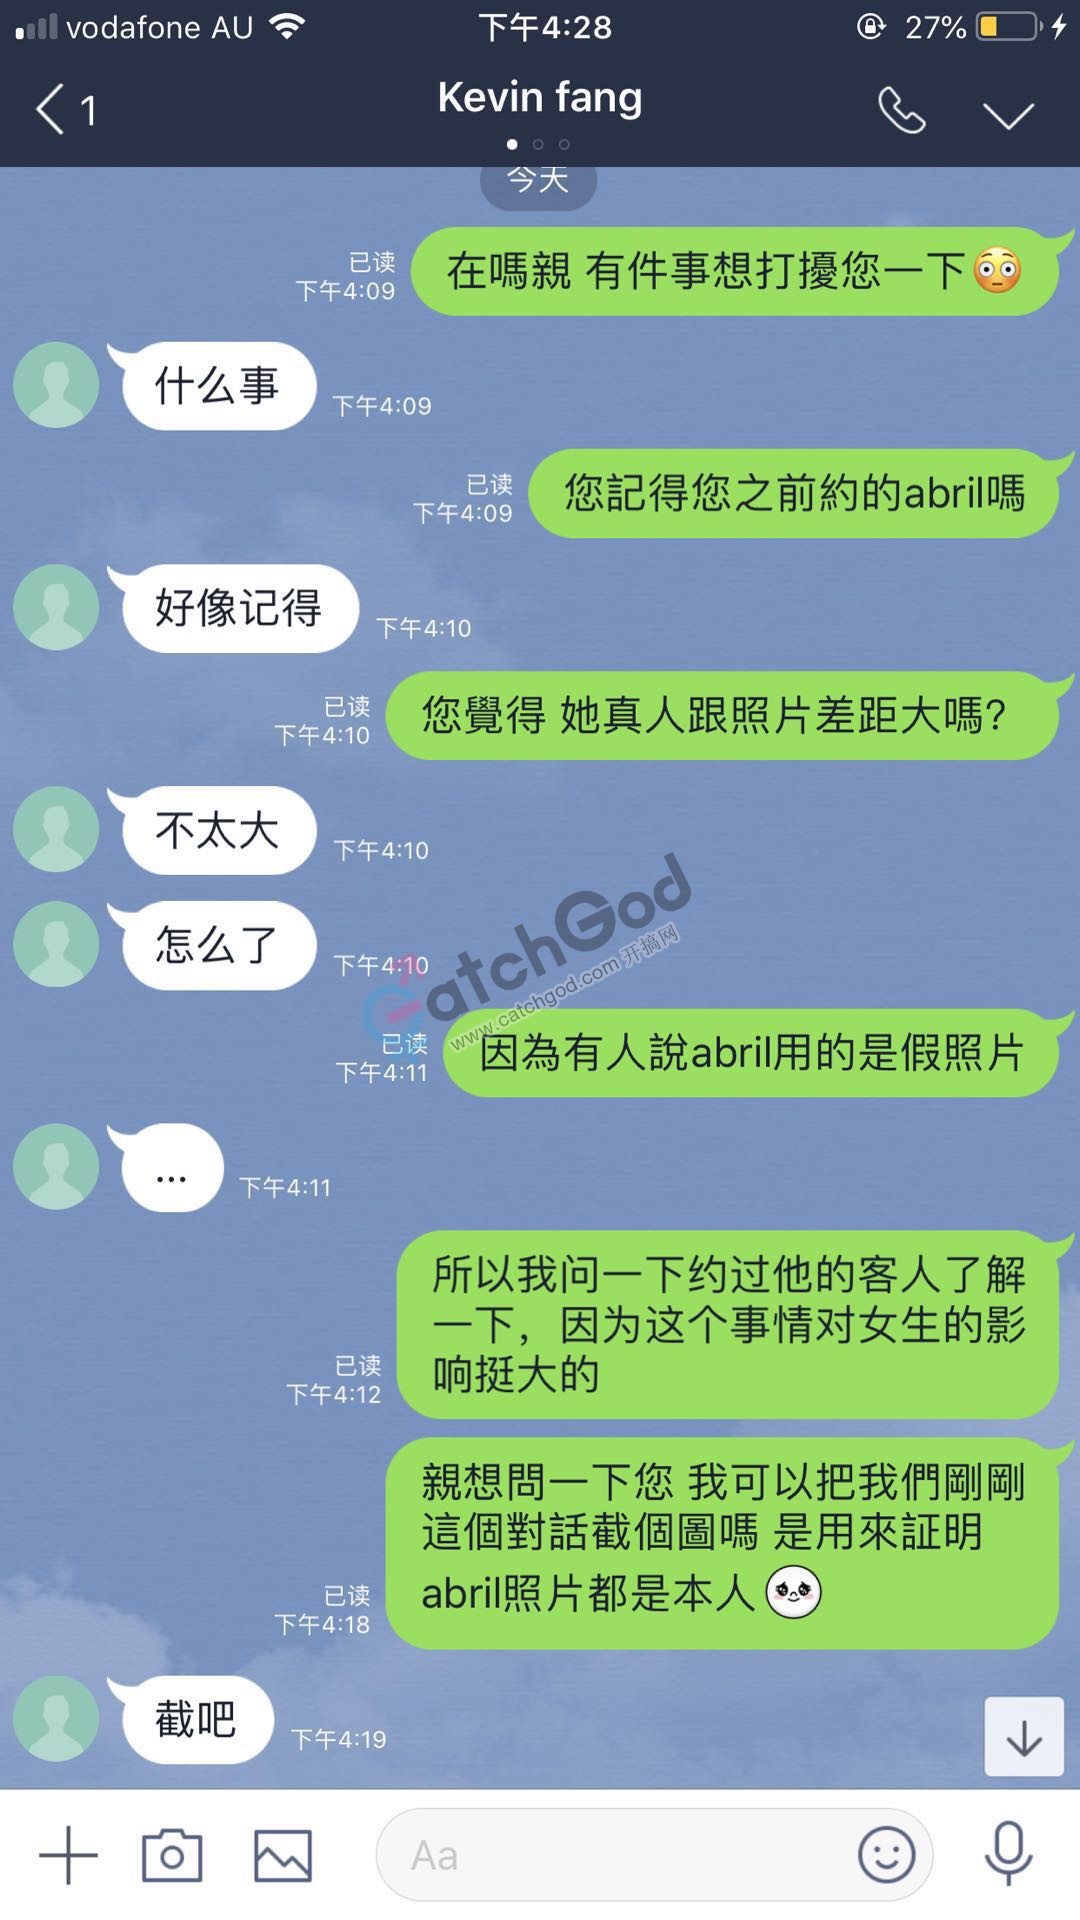 WeChat Image_20190505183601.jpg